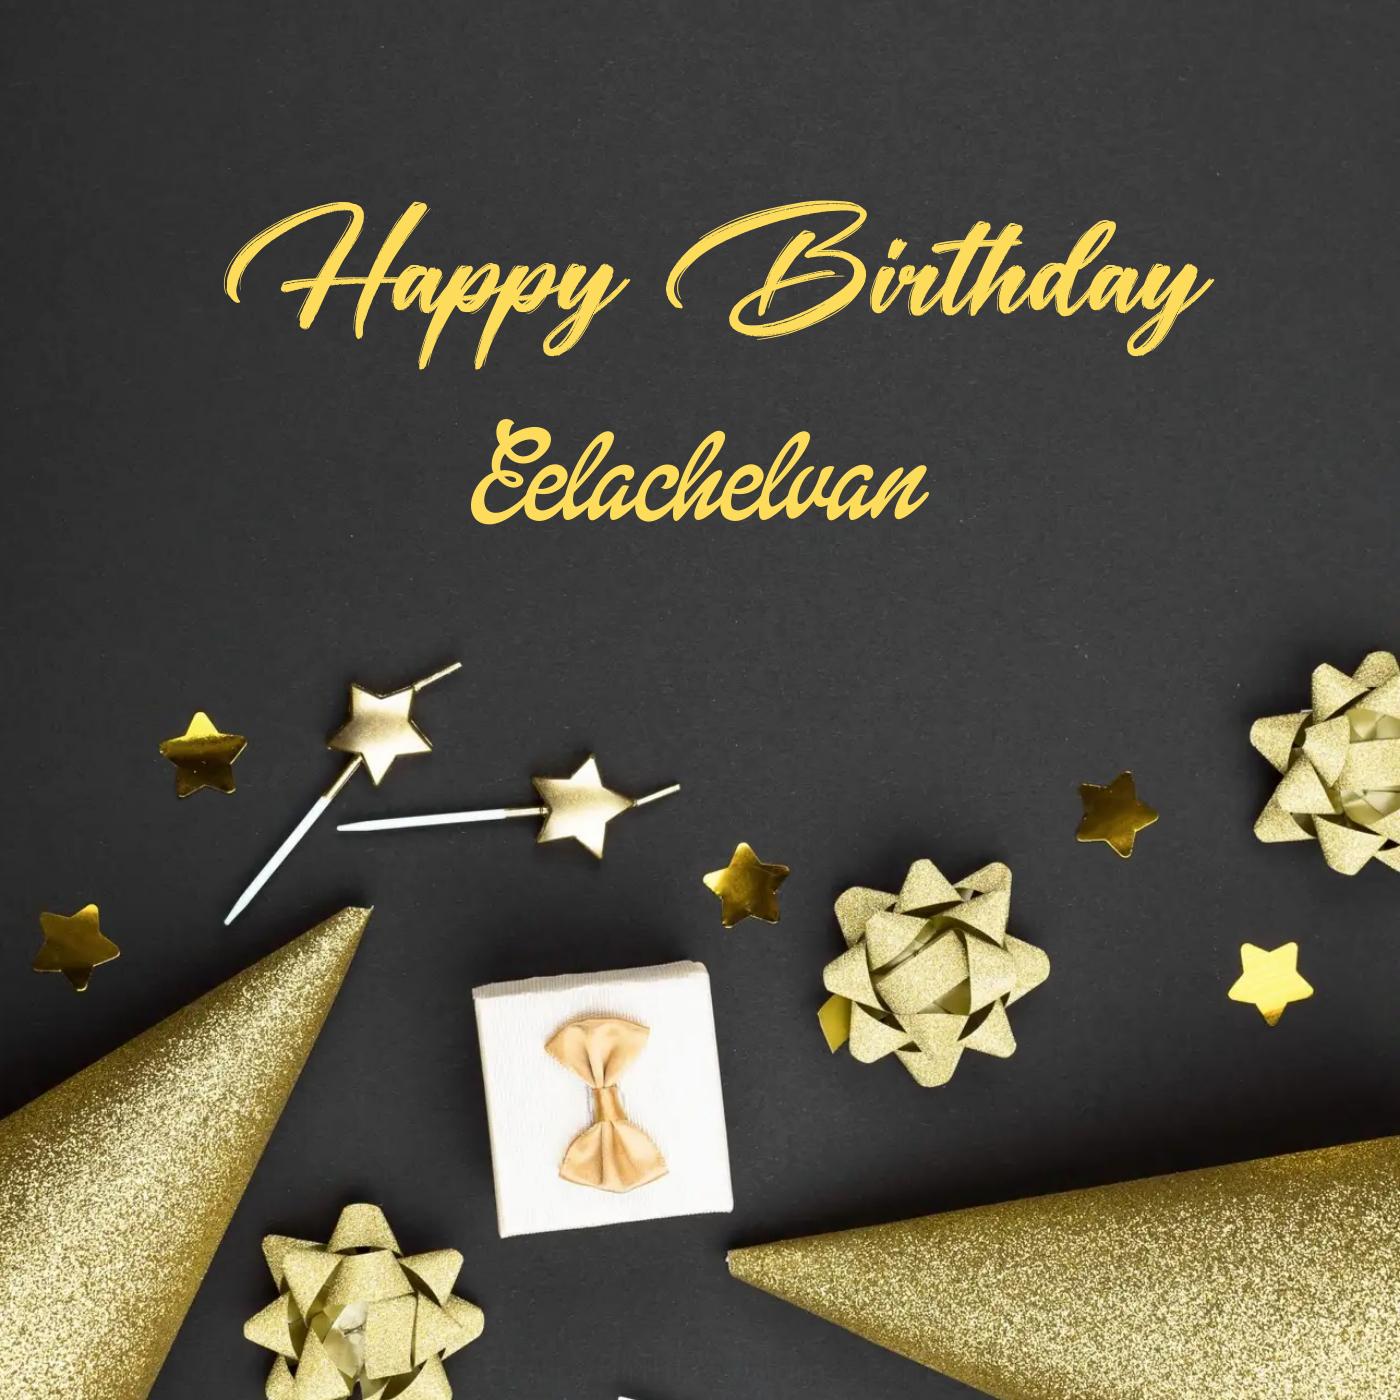 Happy Birthday Eelachelvan Golden Theme Card